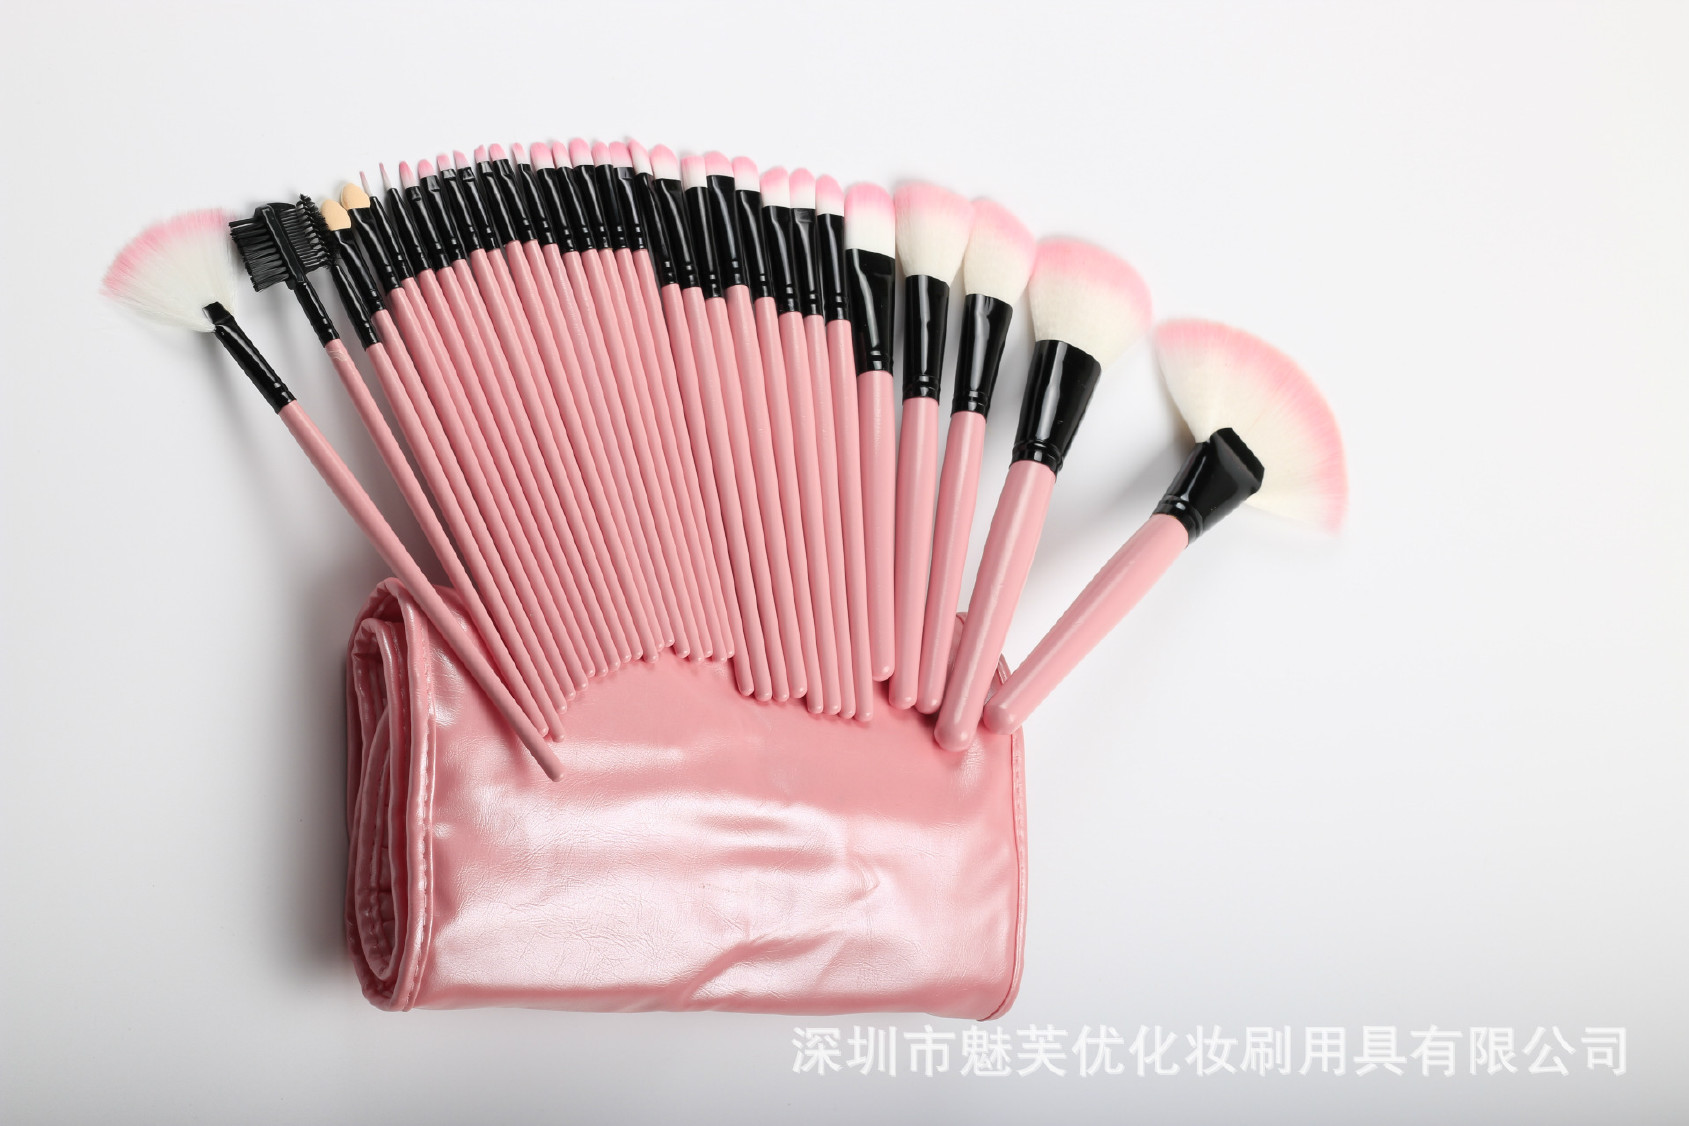 厂家直销32支化妆刷套装 木柄粉色、黑色美妆工具 支持定制示例图9